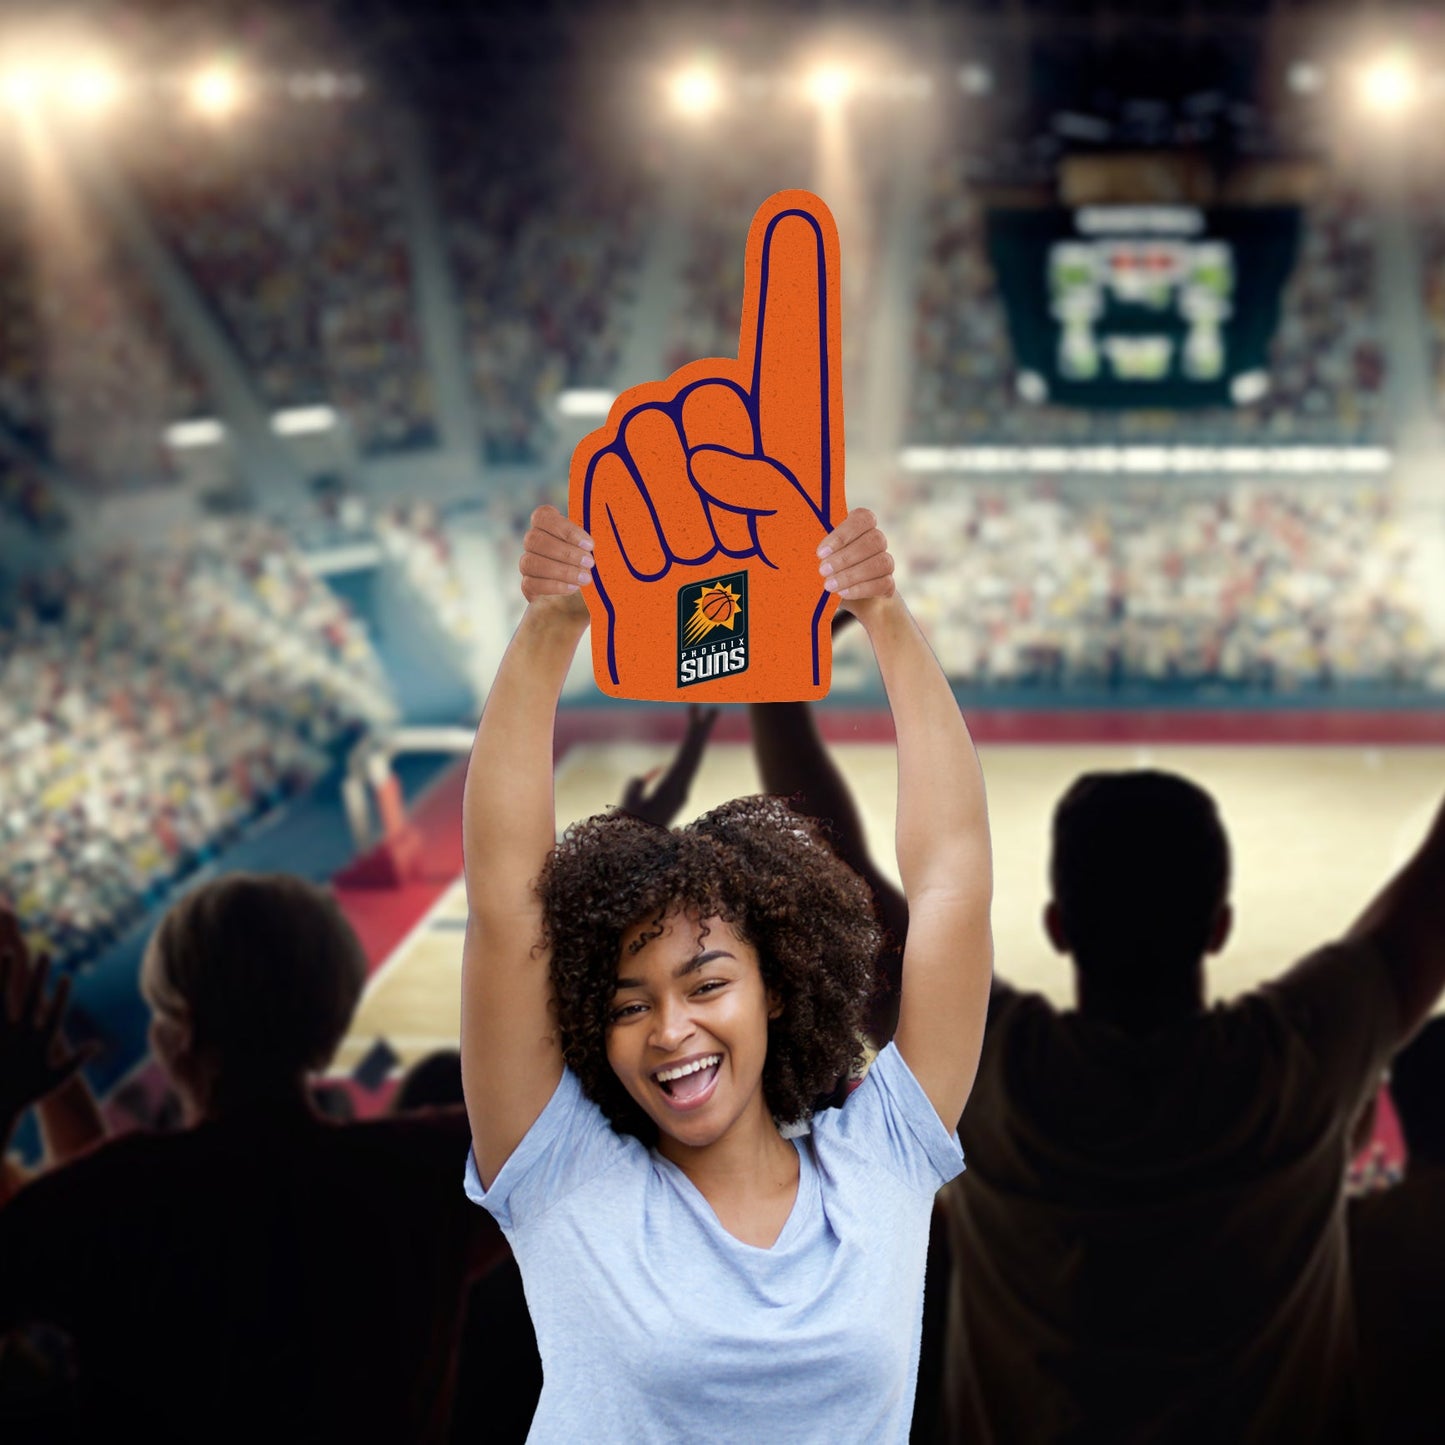 Phoenix Suns: Foamcore Foam Finger Foam Core Cutout - Officially Licensed NBA Big Head